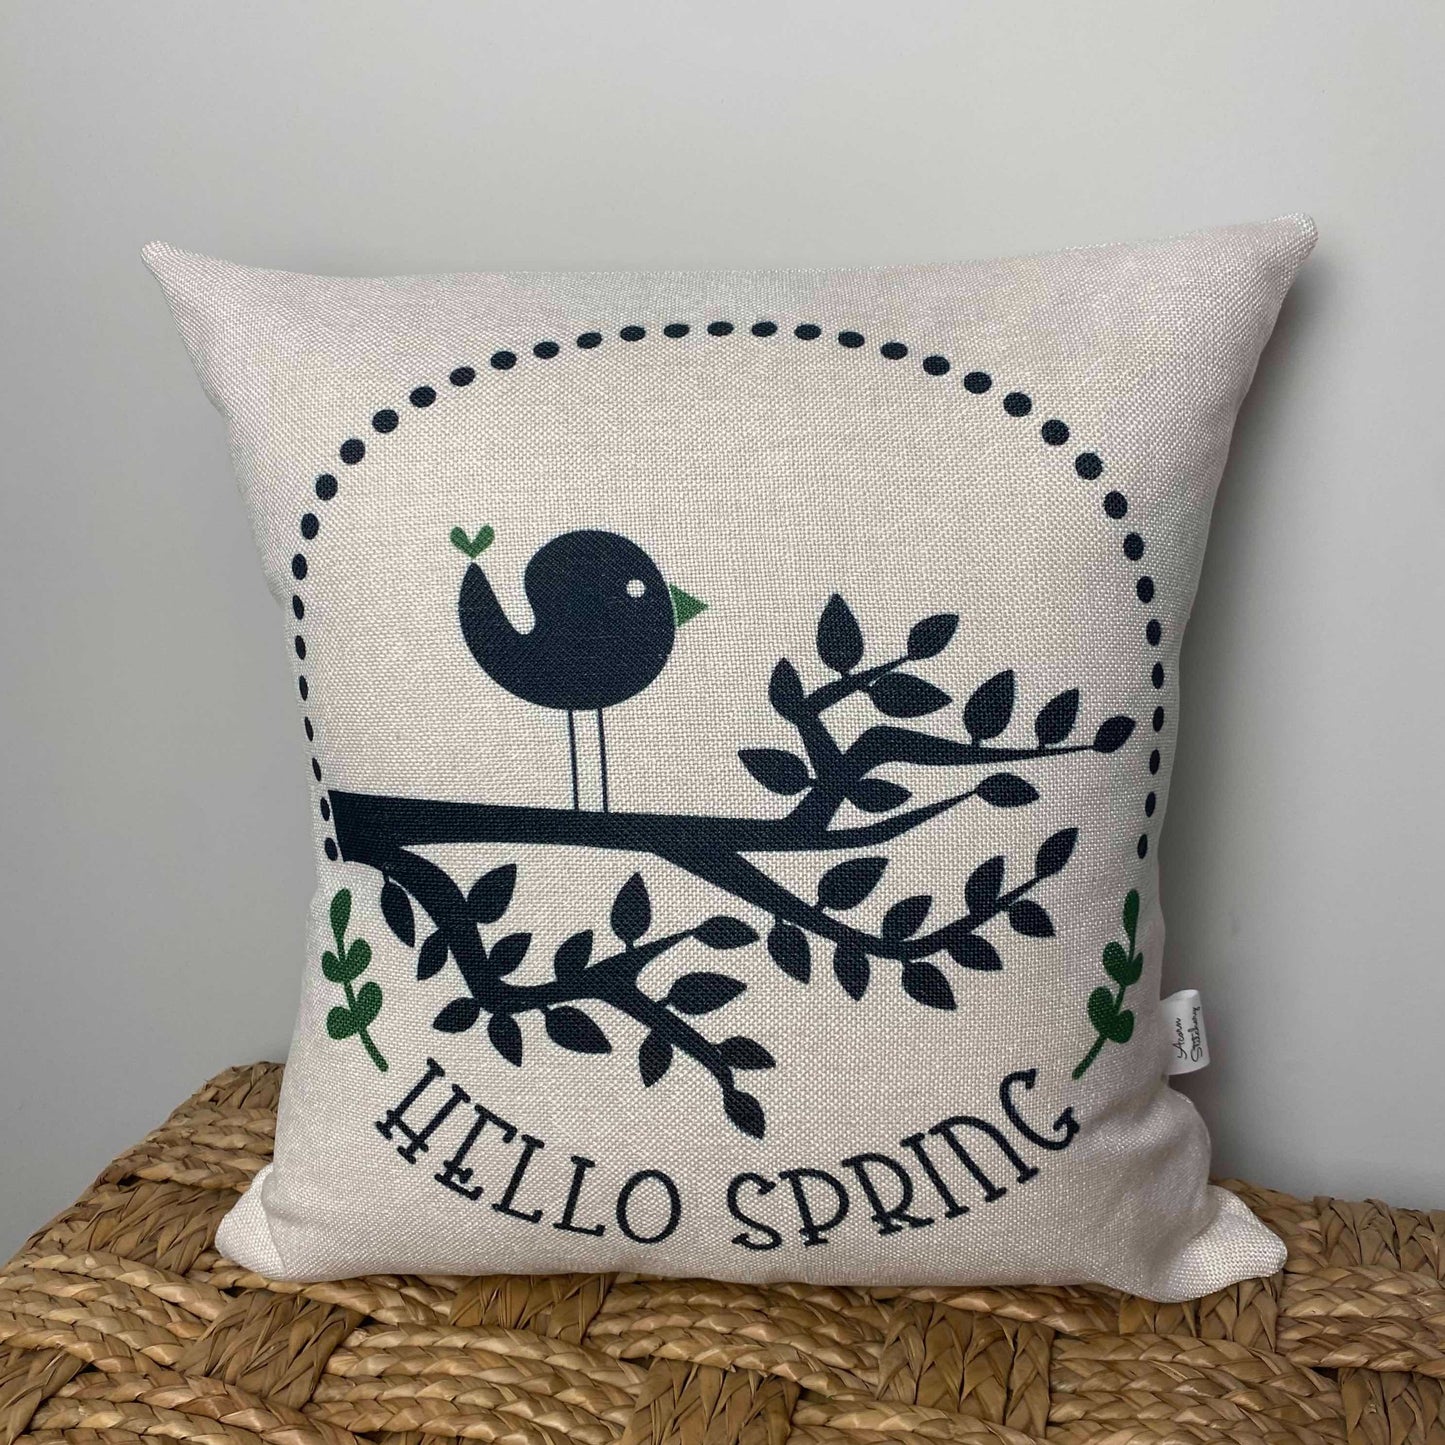 Hello Spring Bird pillow 18" x 18"